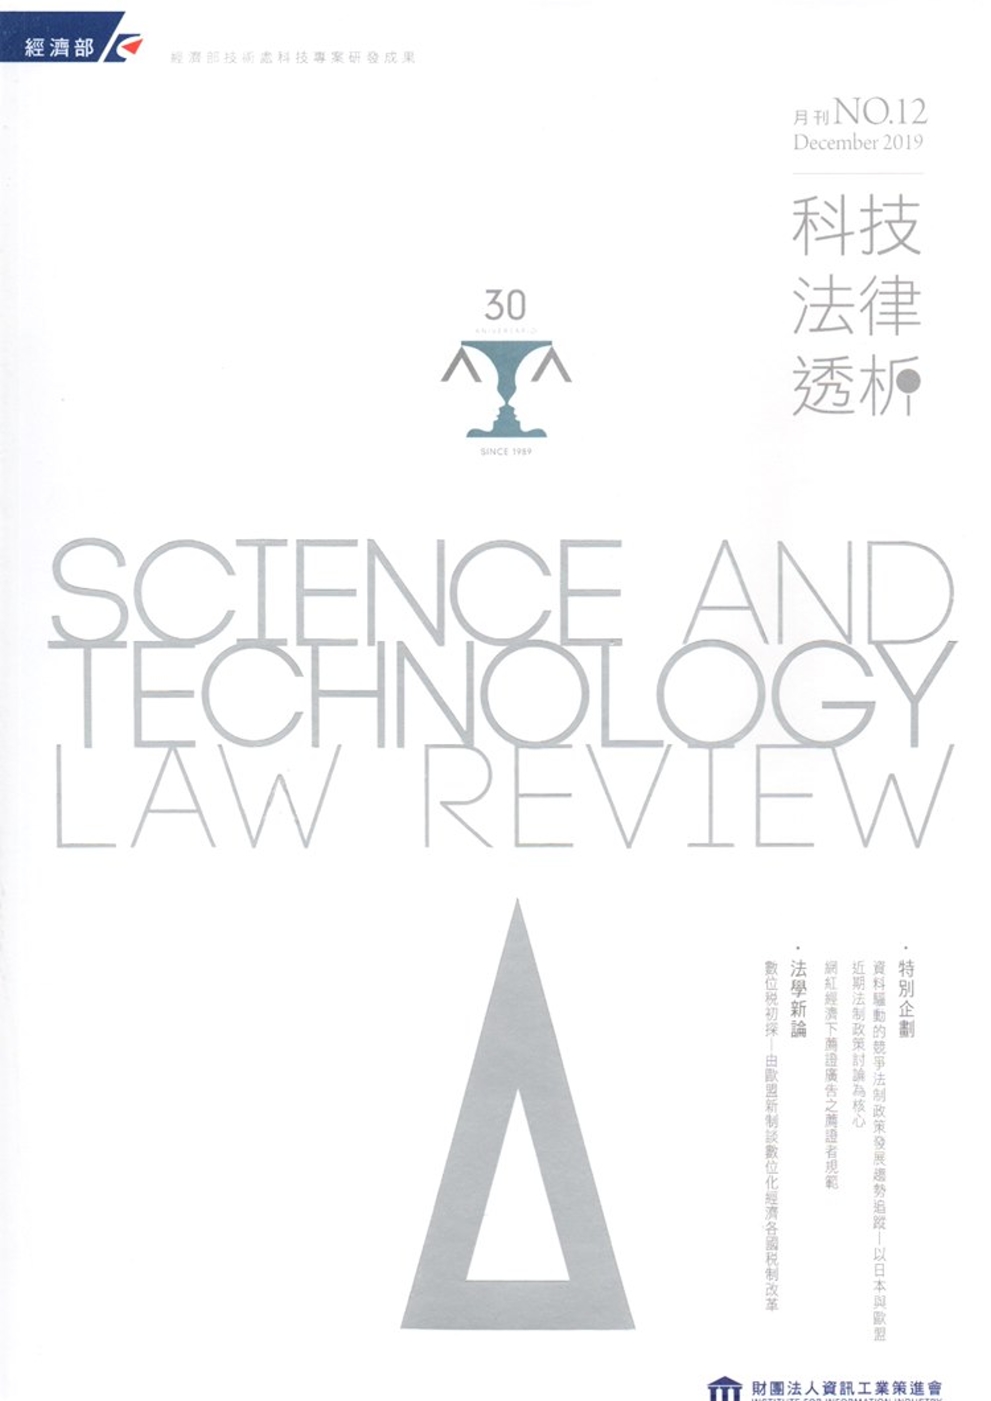 科技法律透析月刊第31卷第12期